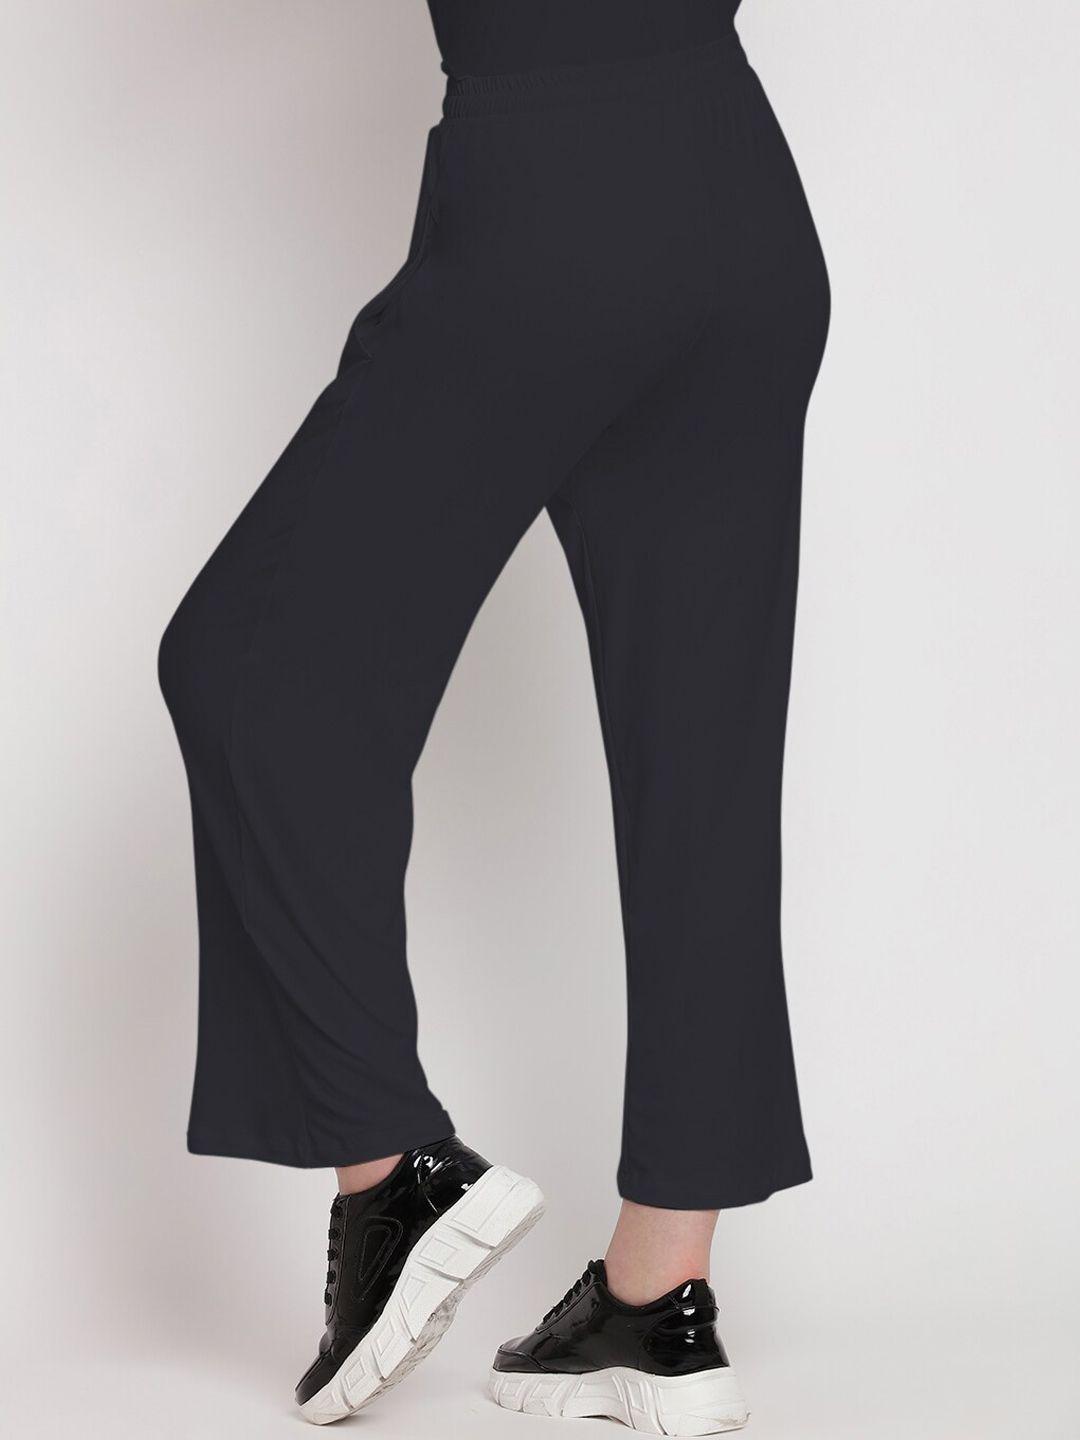 wearjukebox women high rise parallel trousers